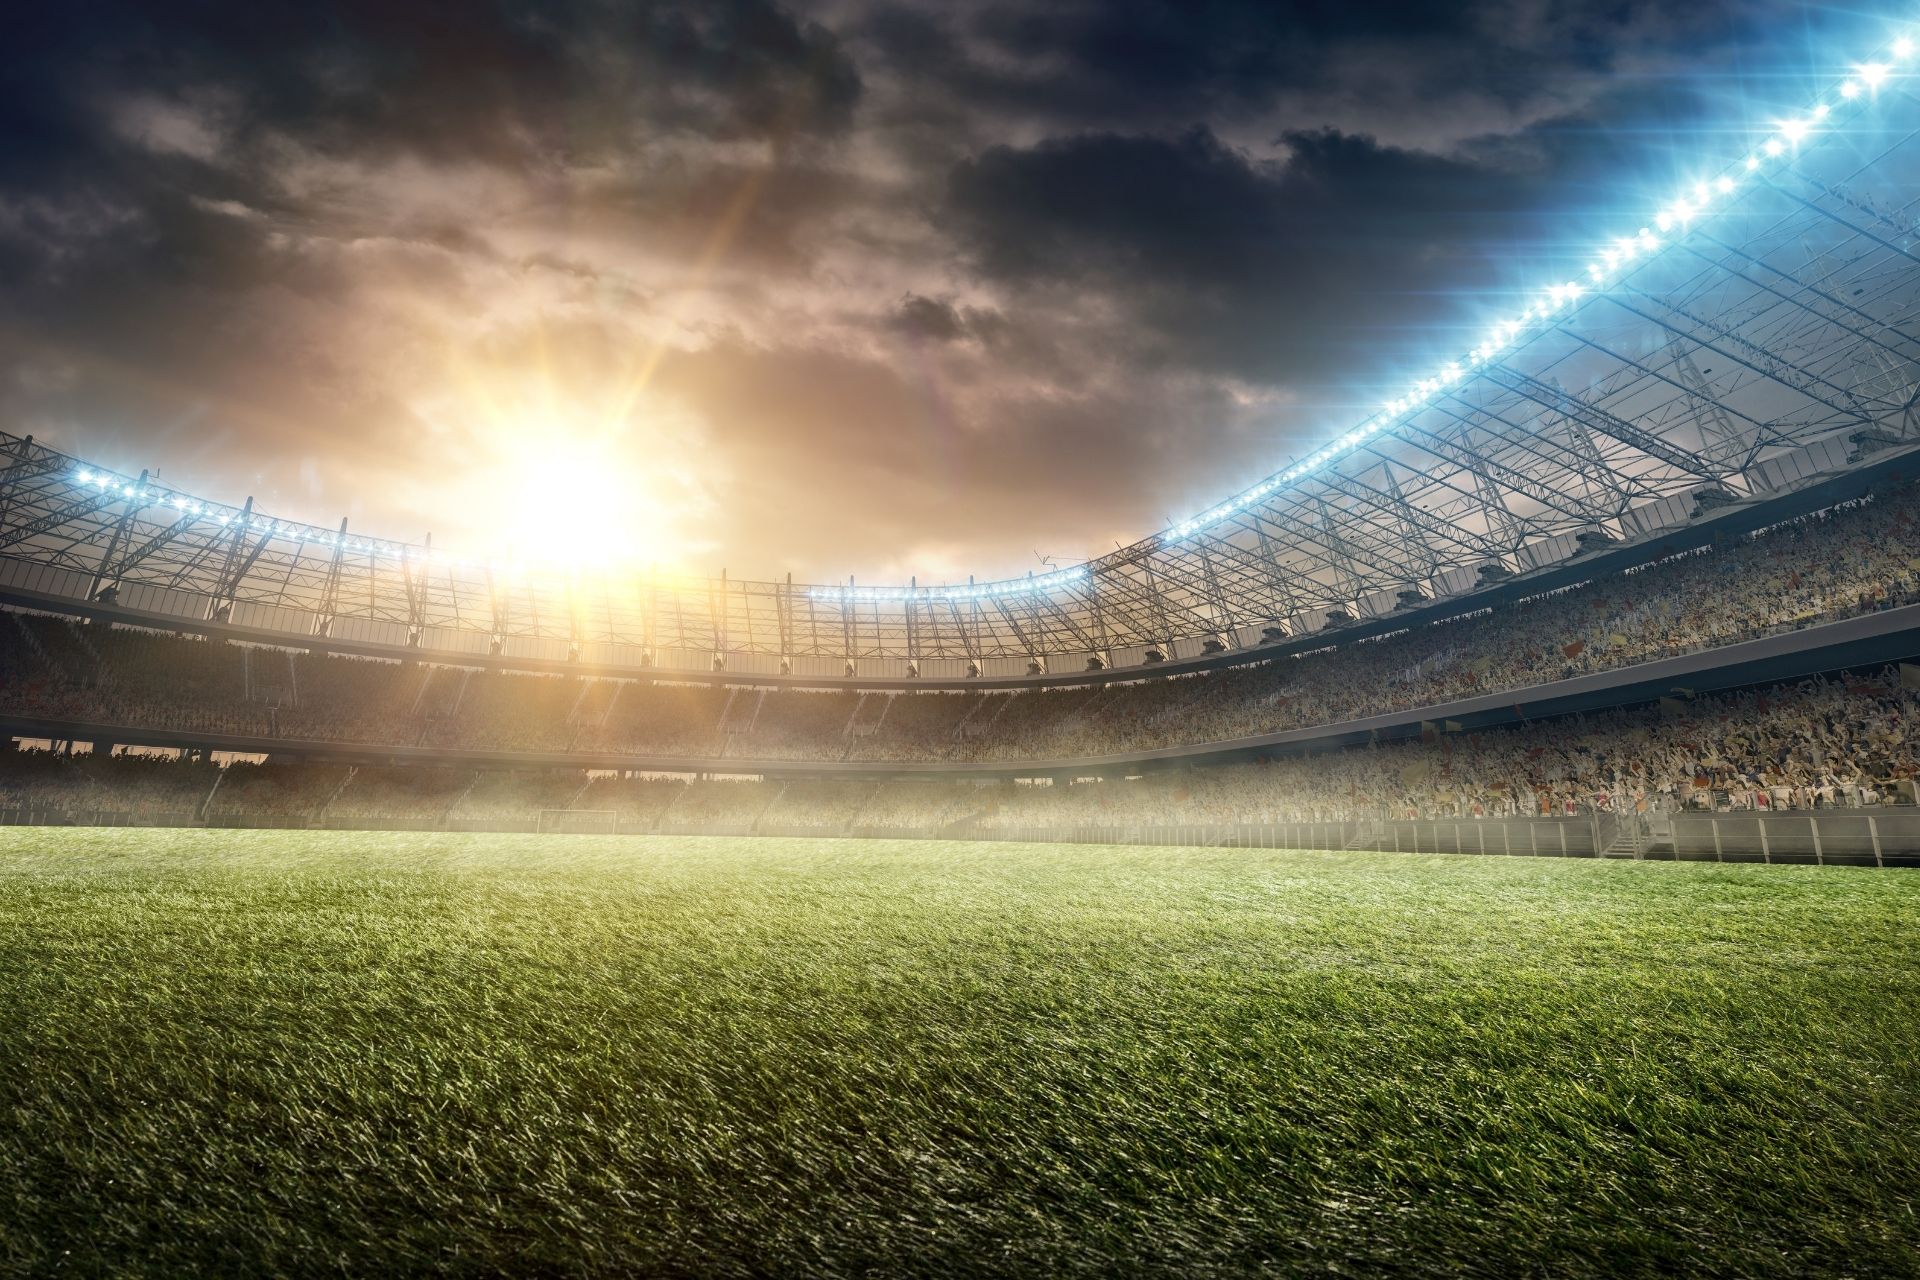 Mecz pomiędzy Atalanta oraz Torino dnia 2022-04-27 18:15 na stadionie Gewiss Stadium - wynik 4-4